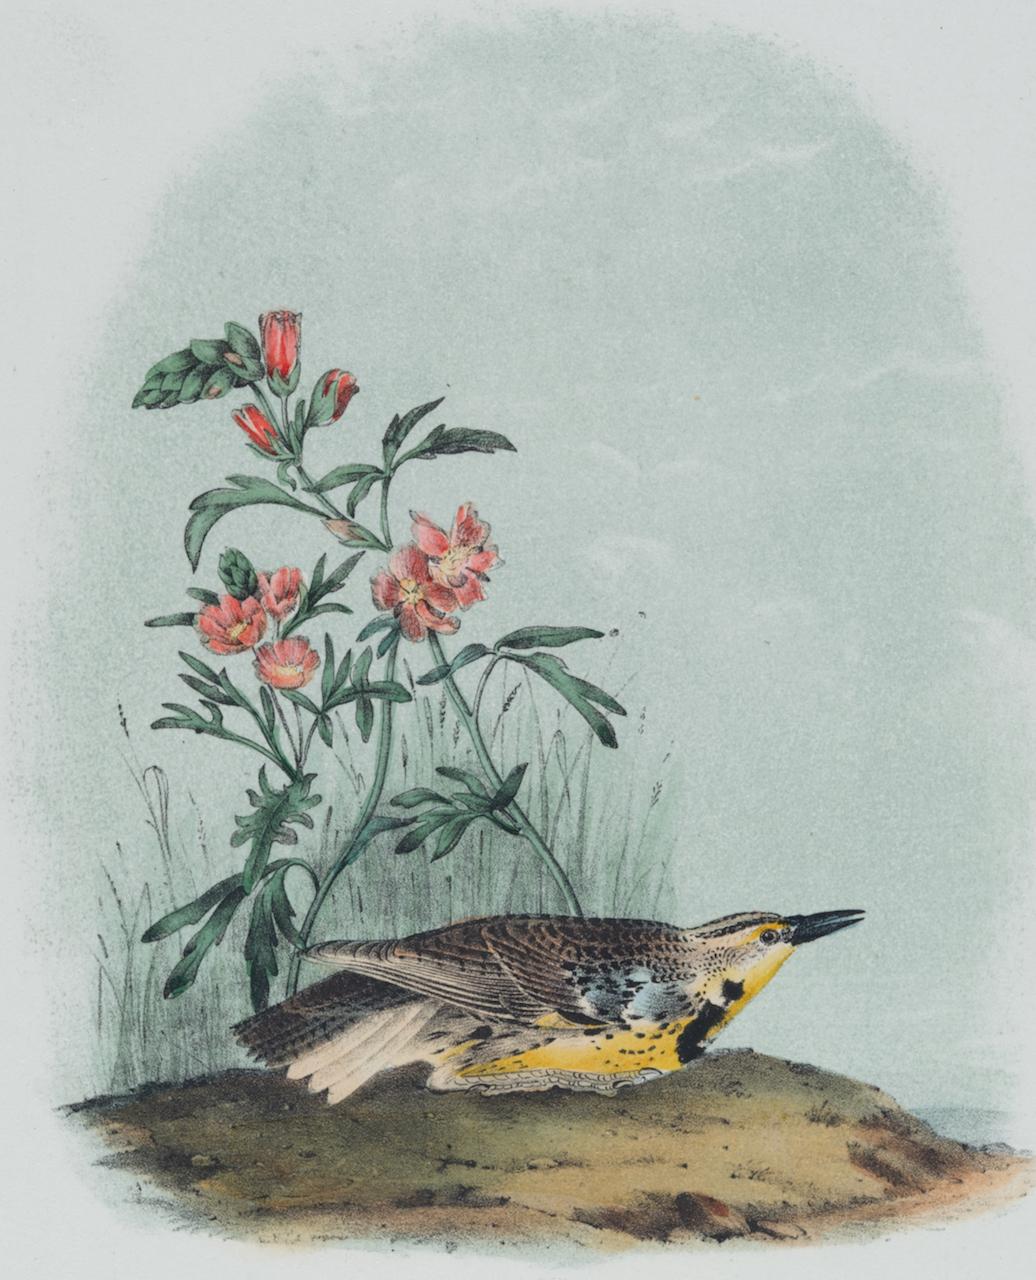 Missouri Meadow Lark: Eine handkolorierte Vogellithographie von Audubon aus dem 19. Jahrhundert  – Print von John James Audubon